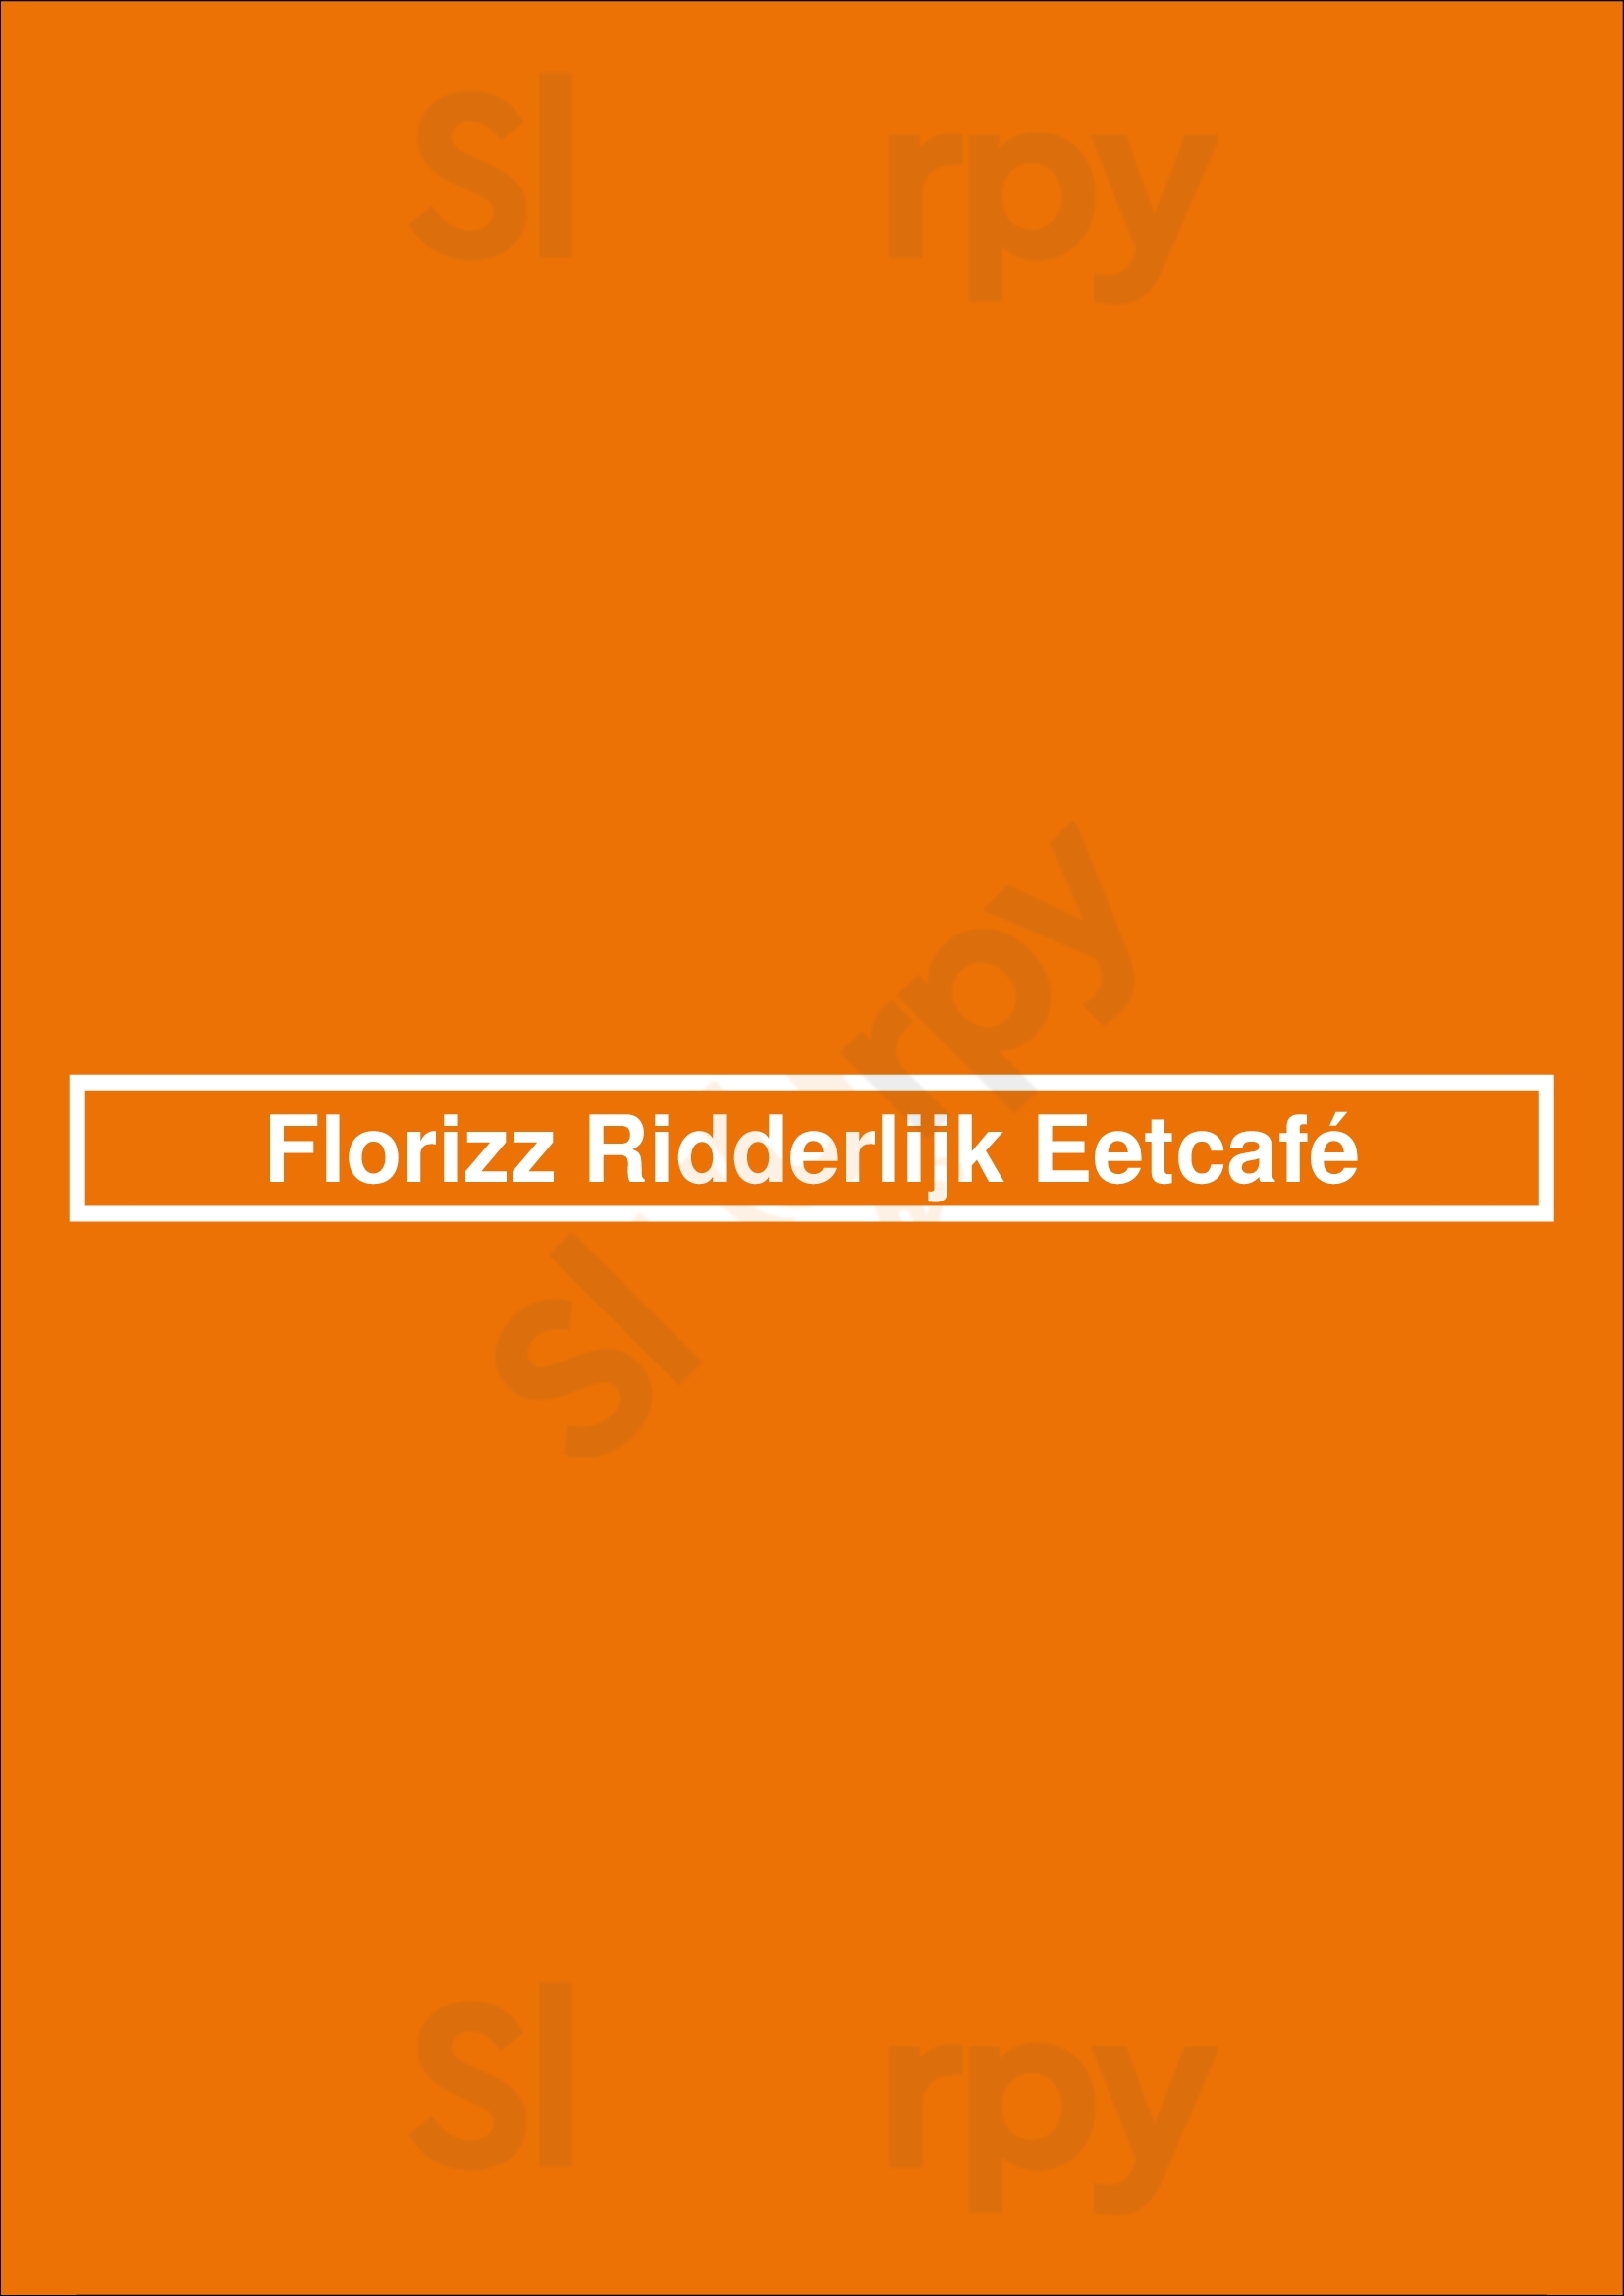 Florizz Ridderlijk Eetcafé Zwijndrecht Menu - 1